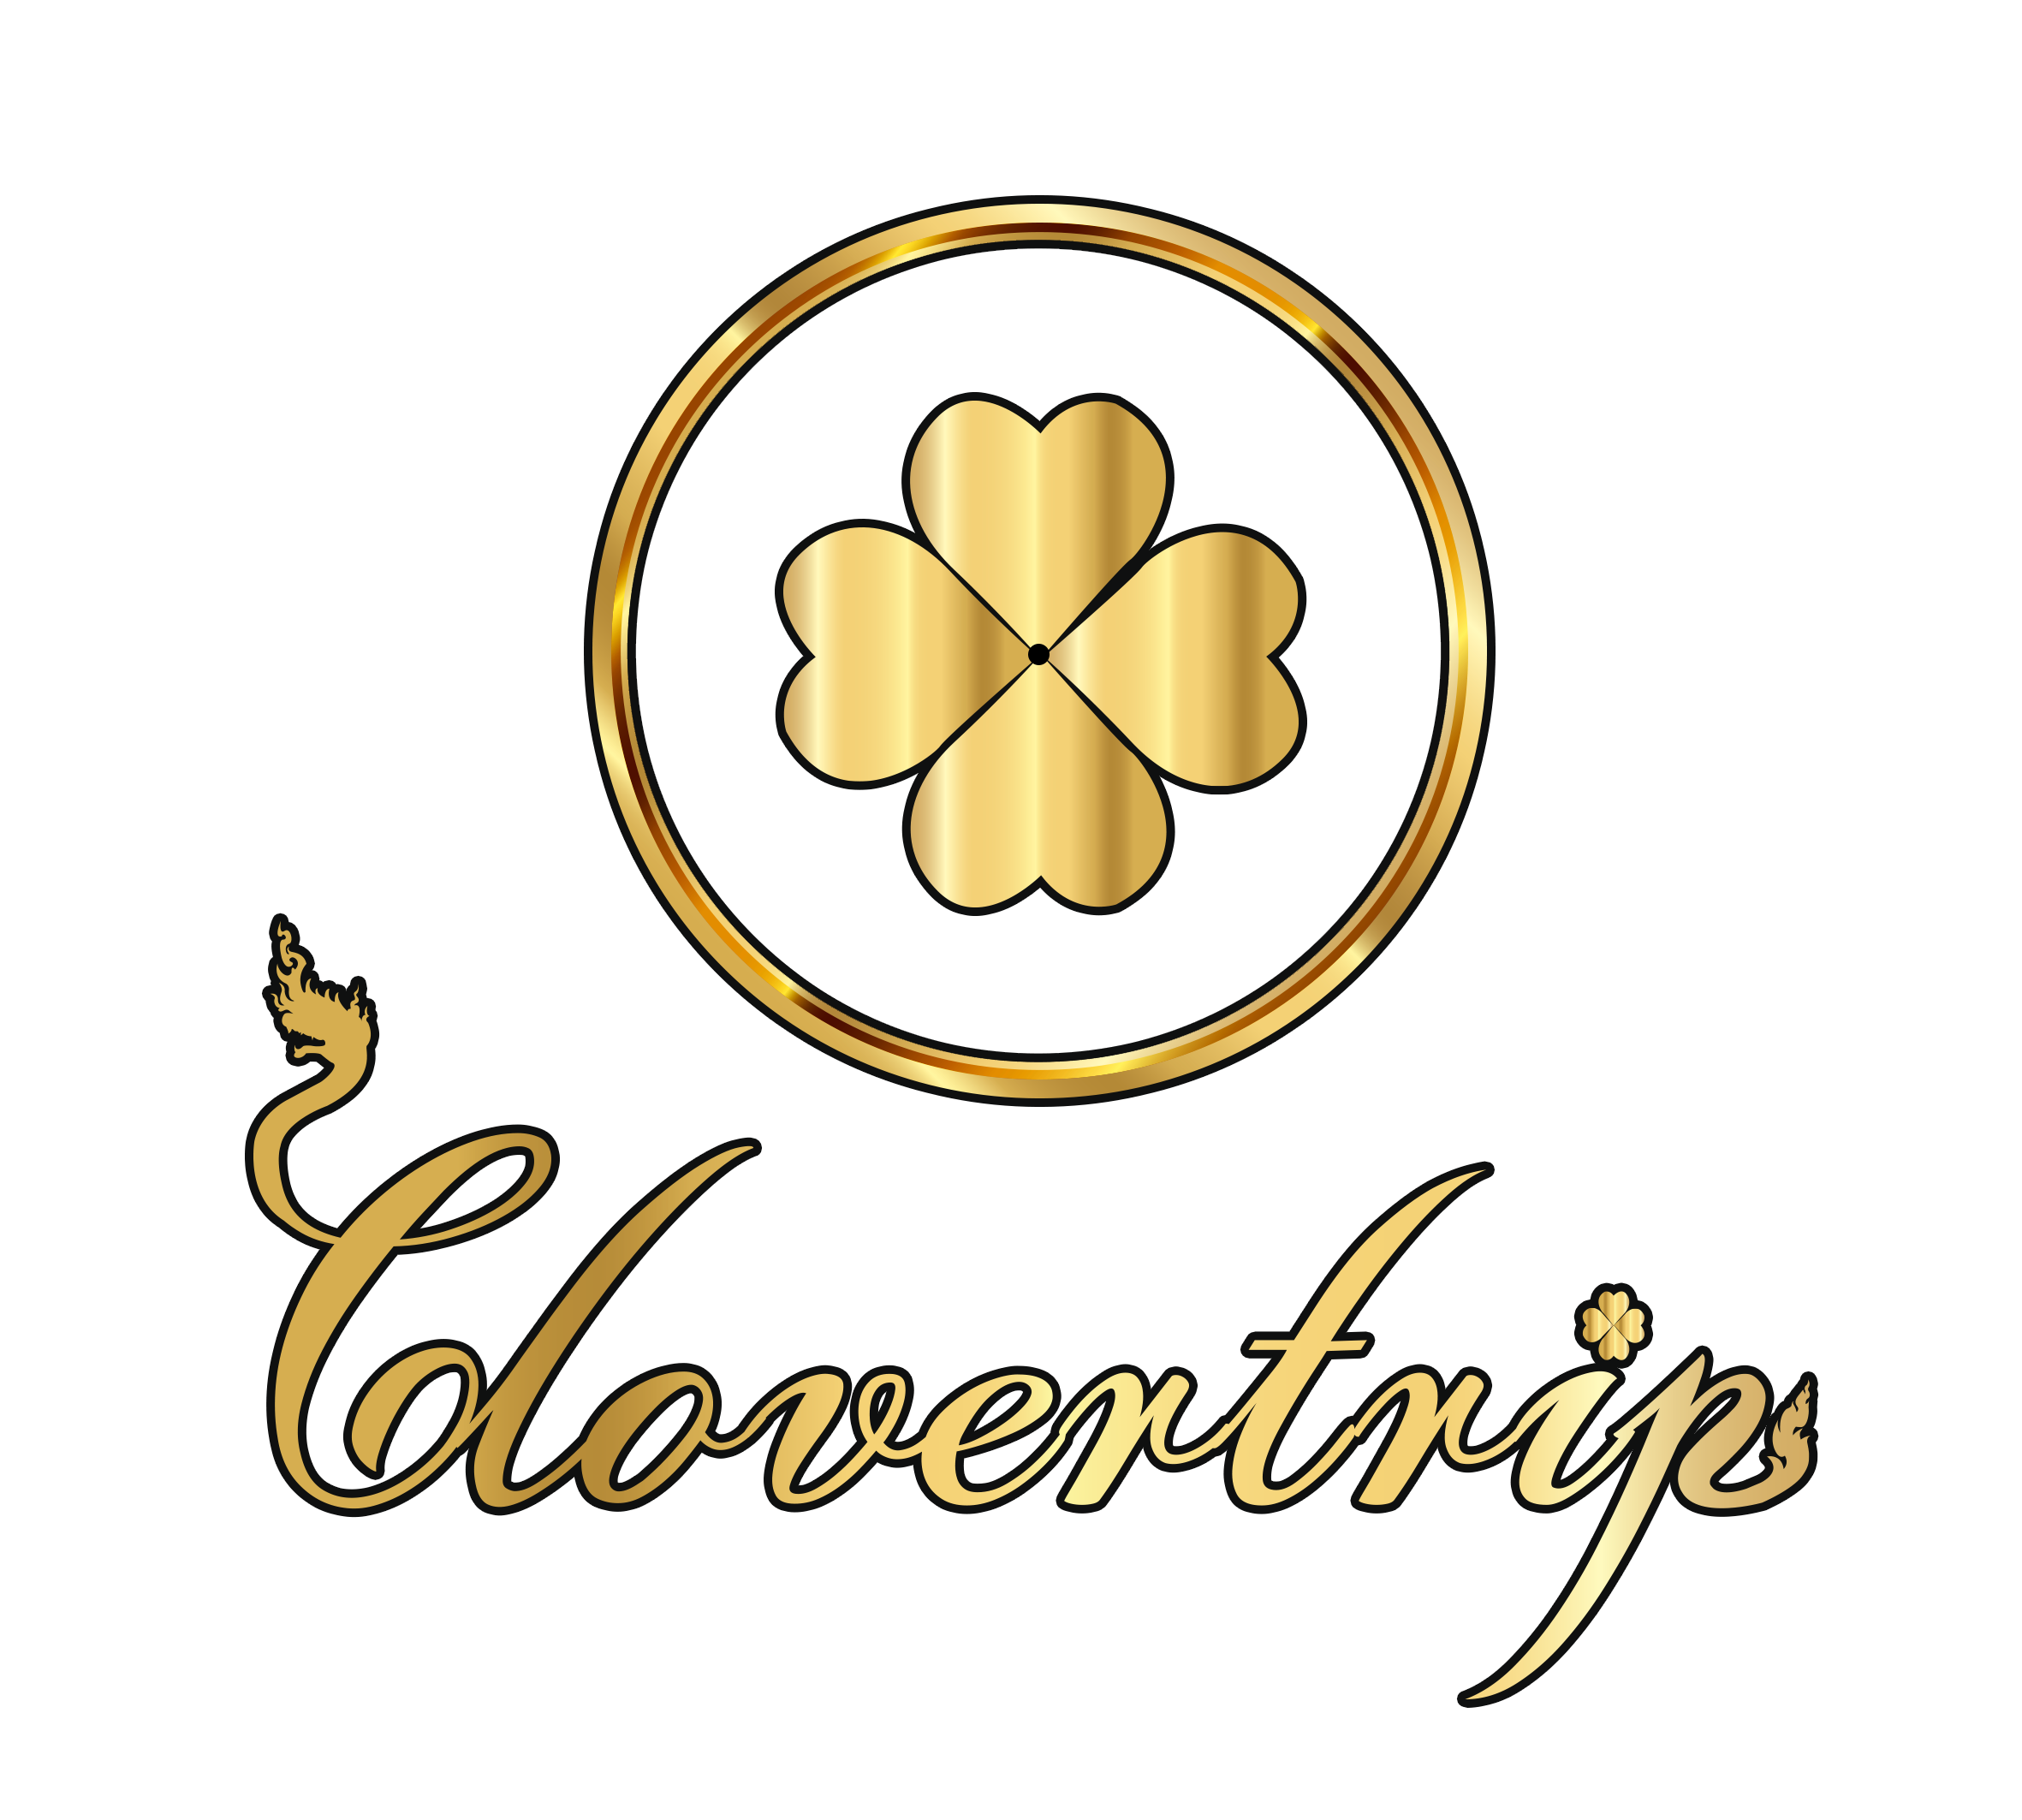 โคลเวอร์ทริป CloverTrip logo โลโก้